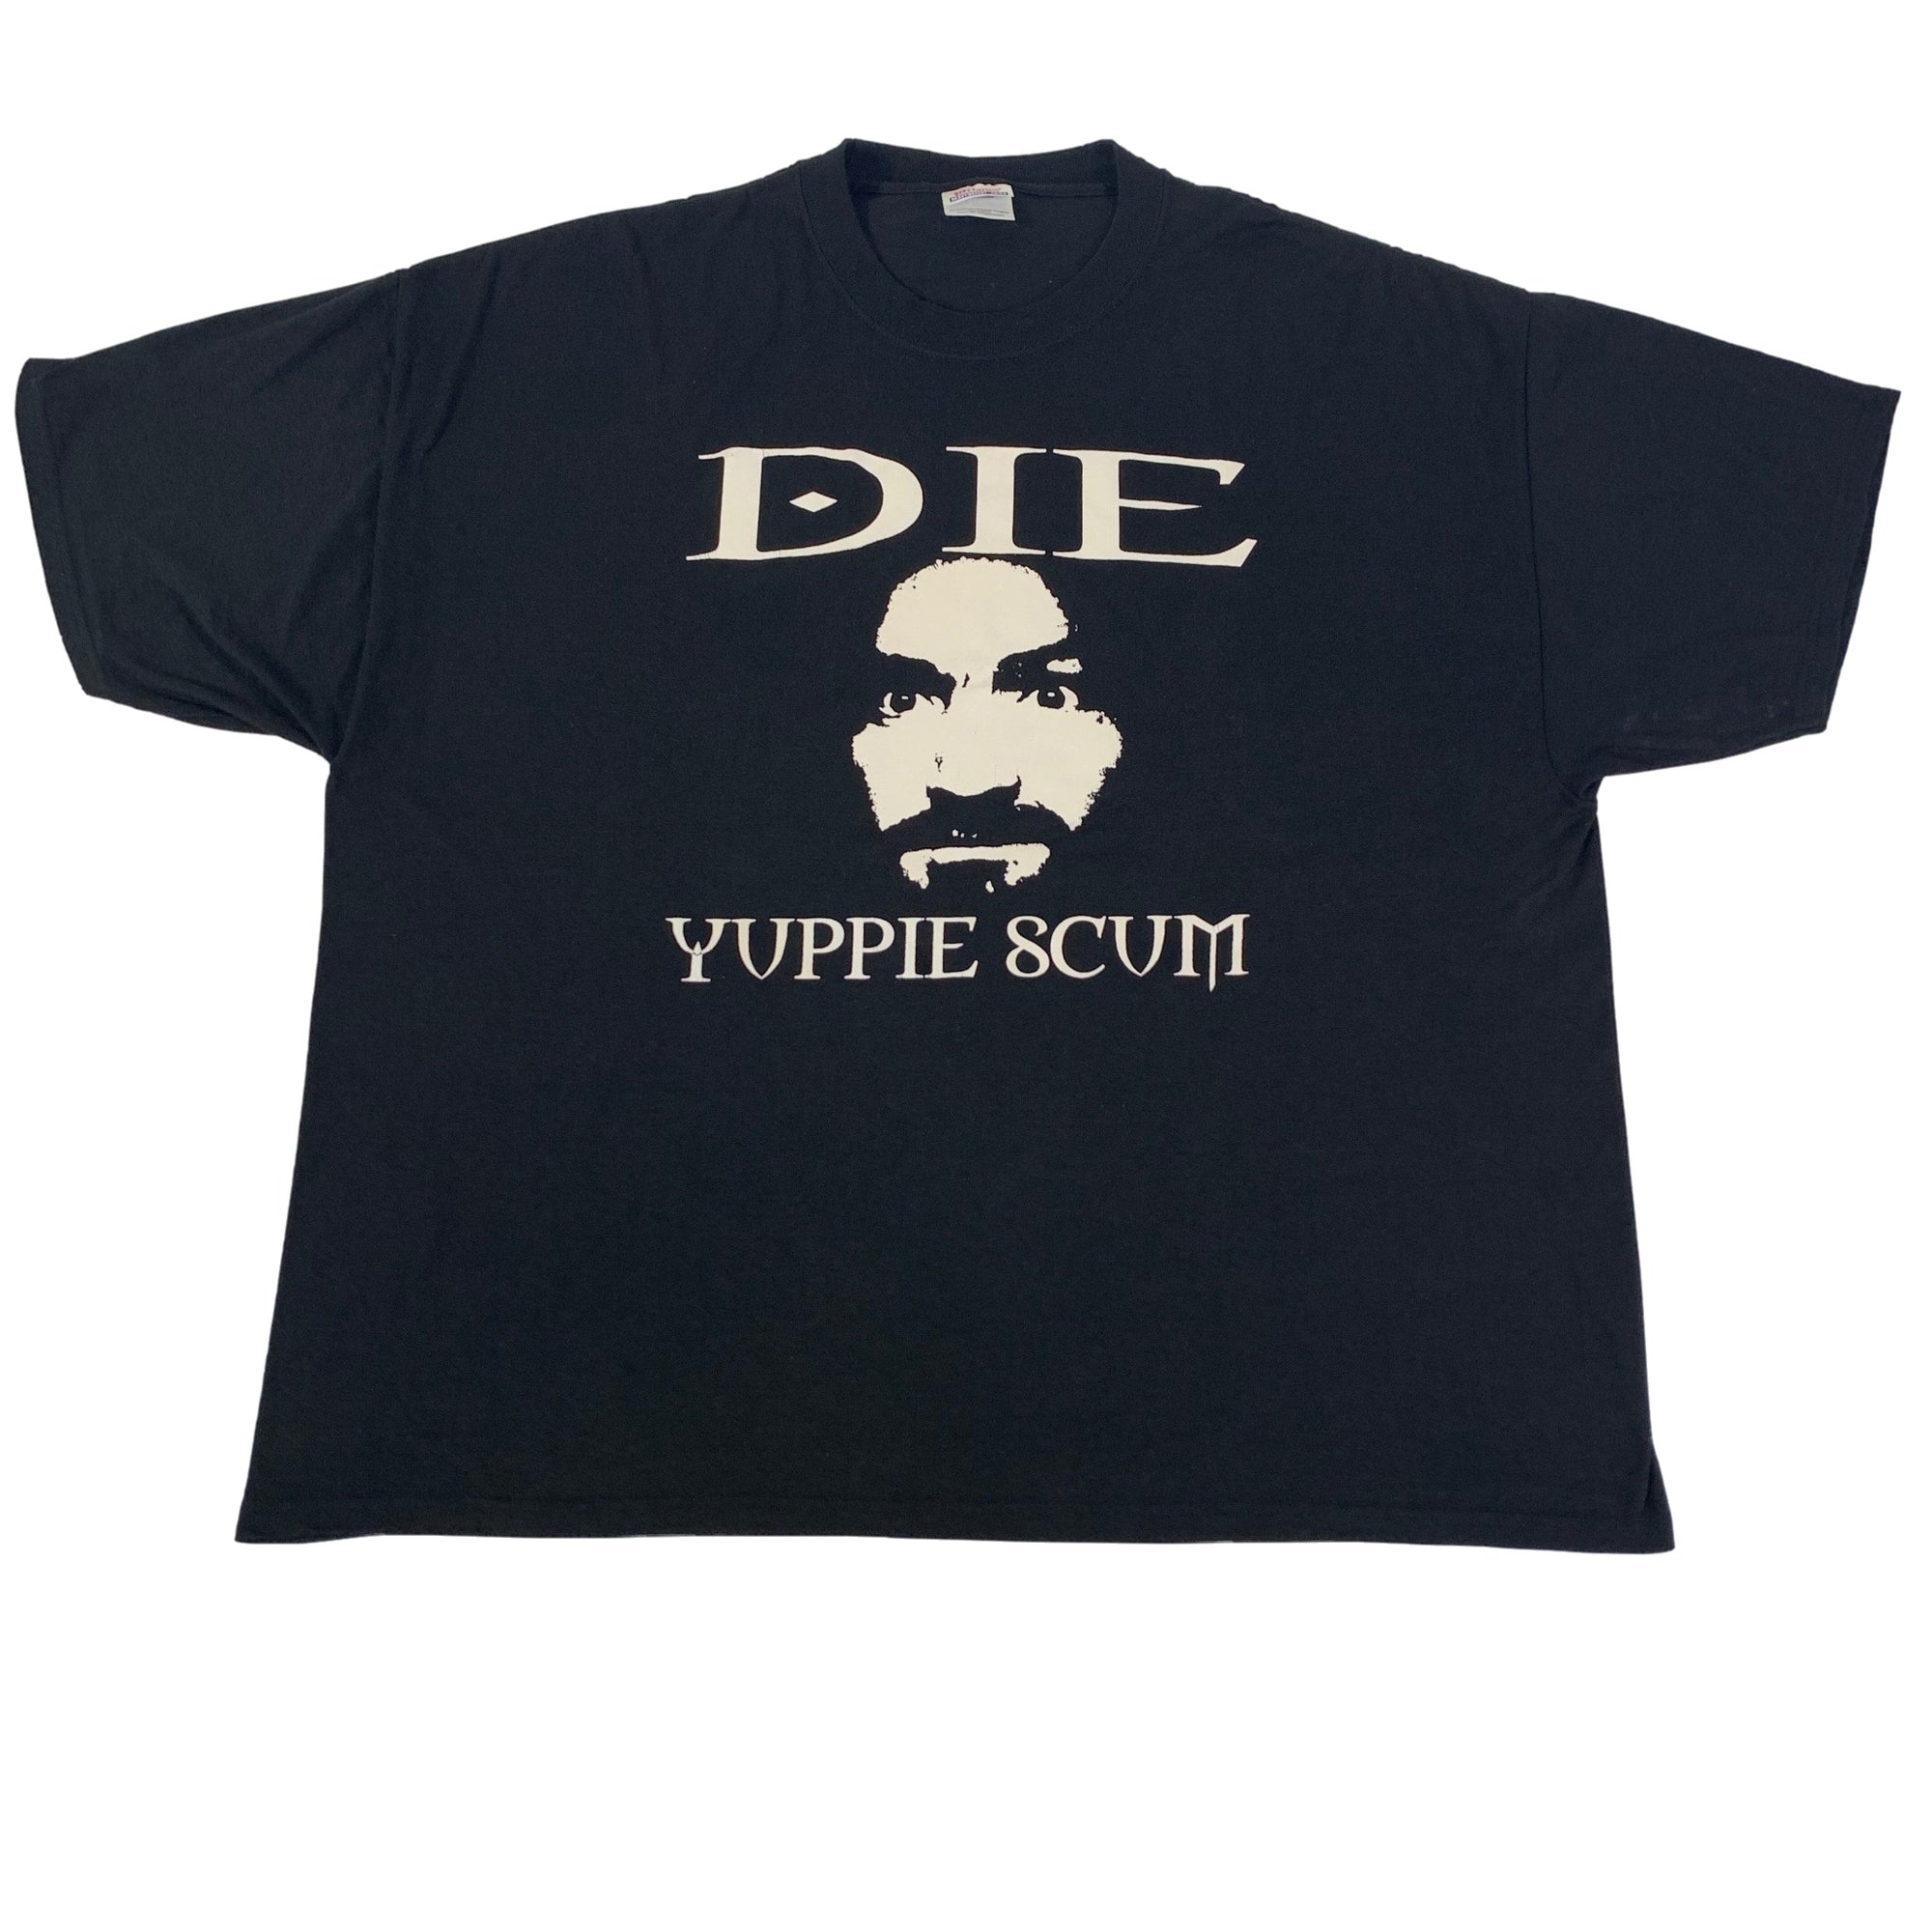 Vintage Charles Manson "DIE" T-Shirt - jointcustodydc